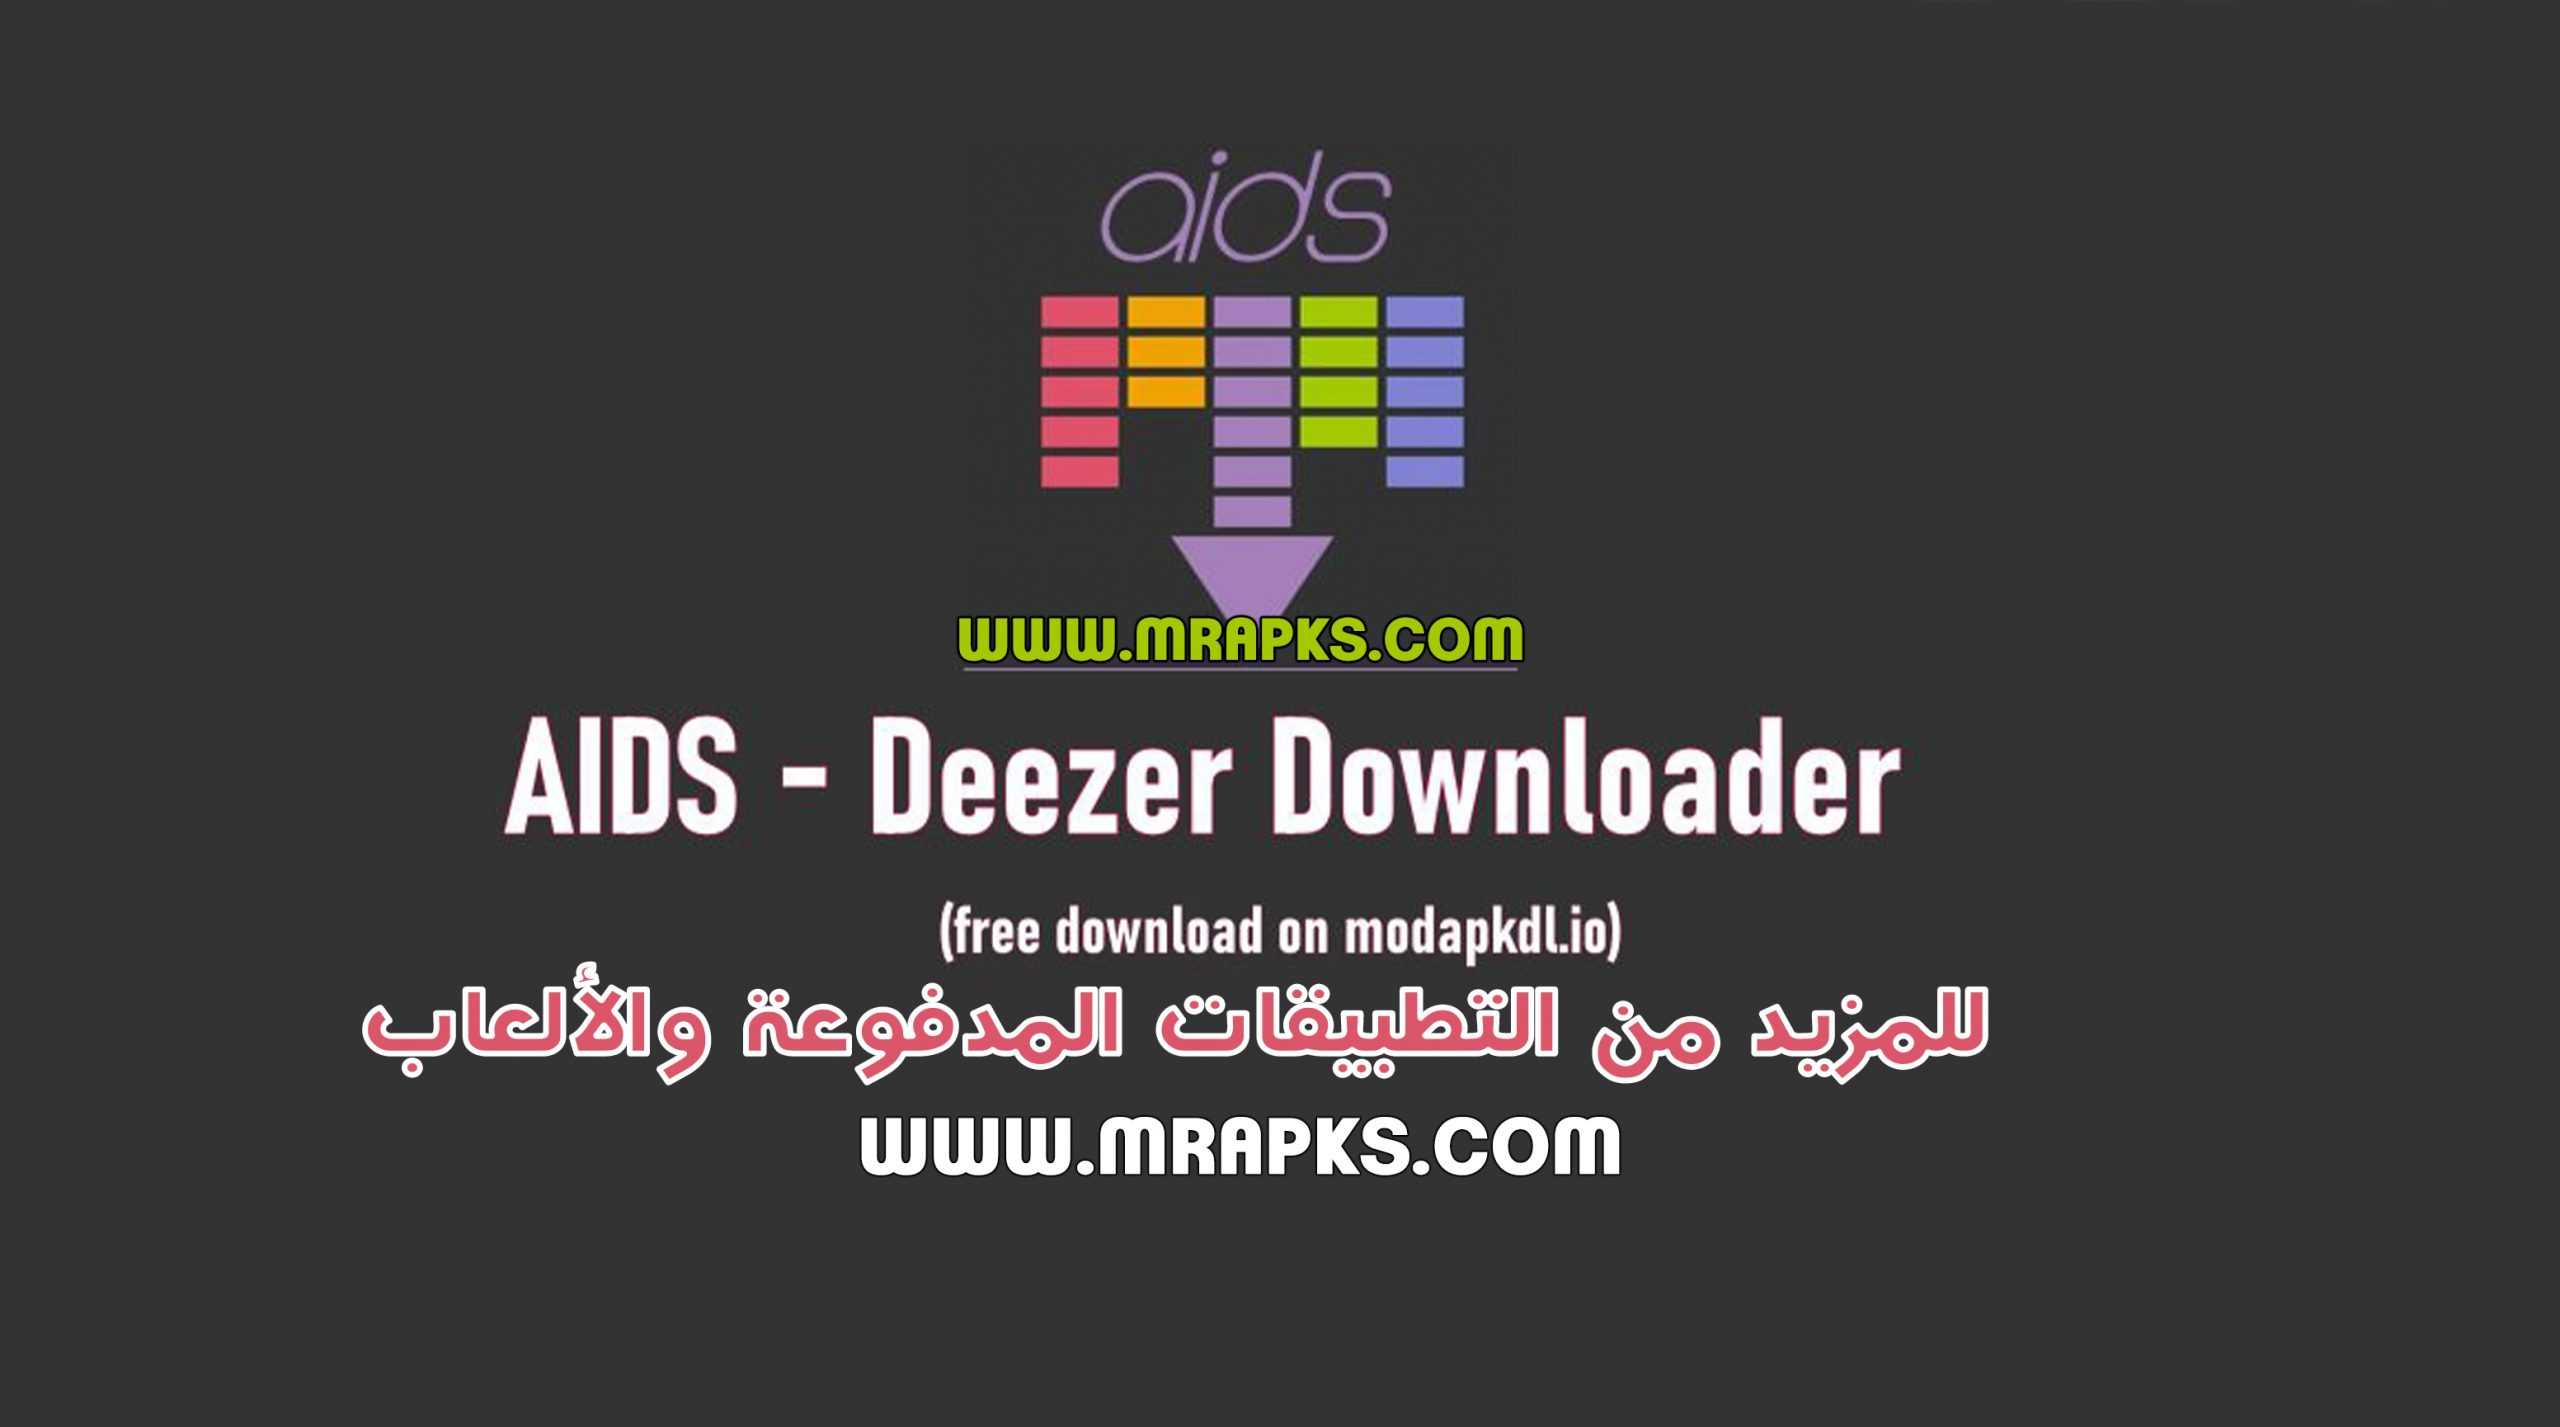 AIDS – Deezer Downloader v1.035-release (Download Music in Flac & 320k) Apk